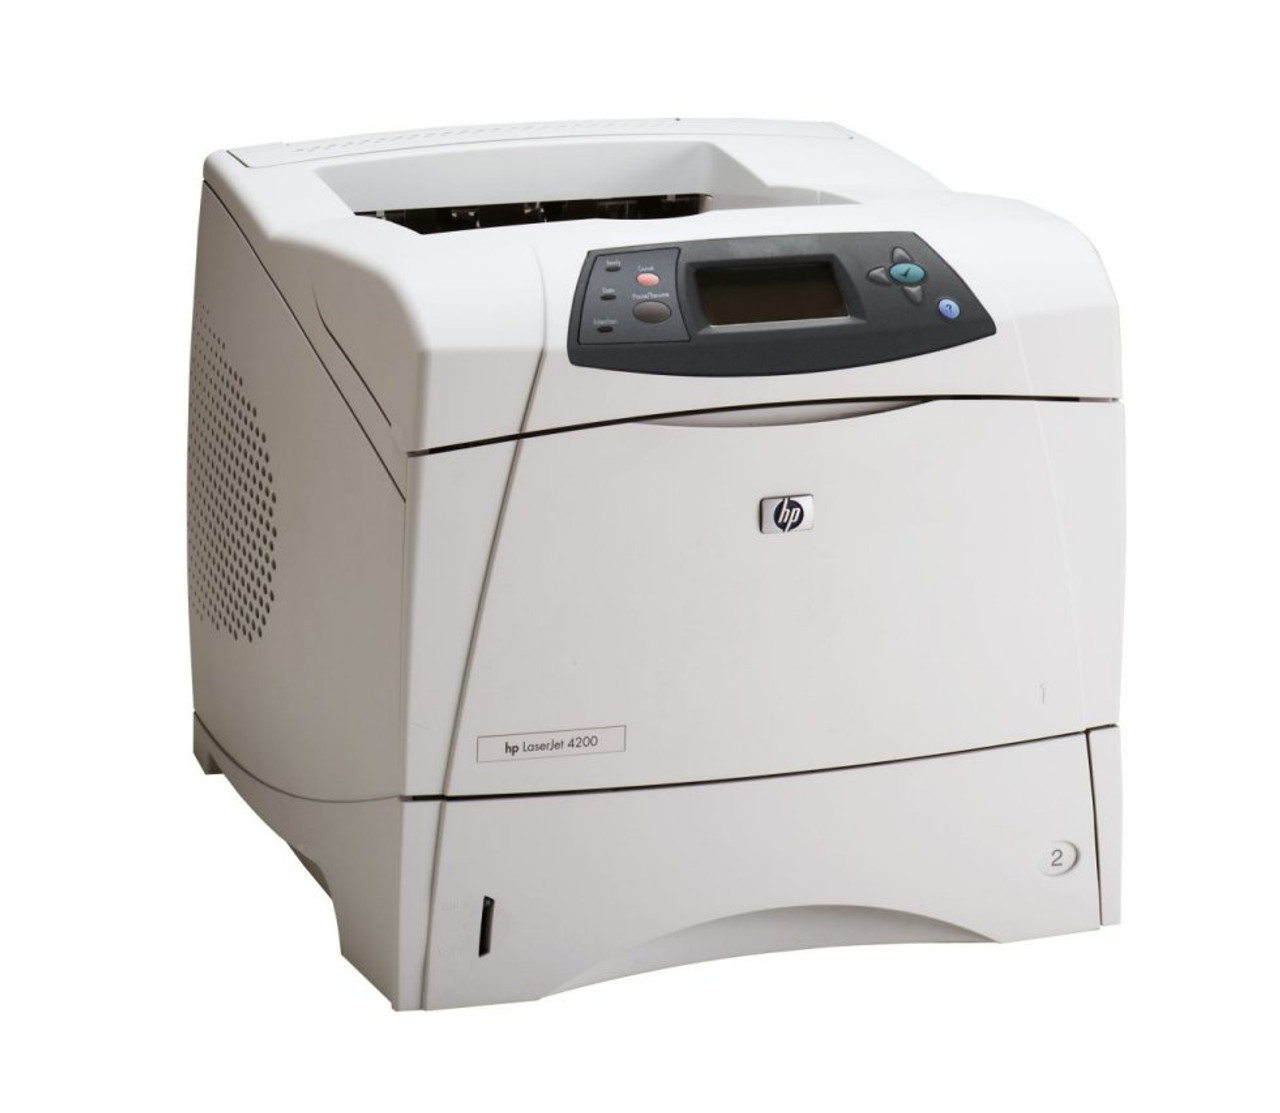 LaserJet 4200 Printer series